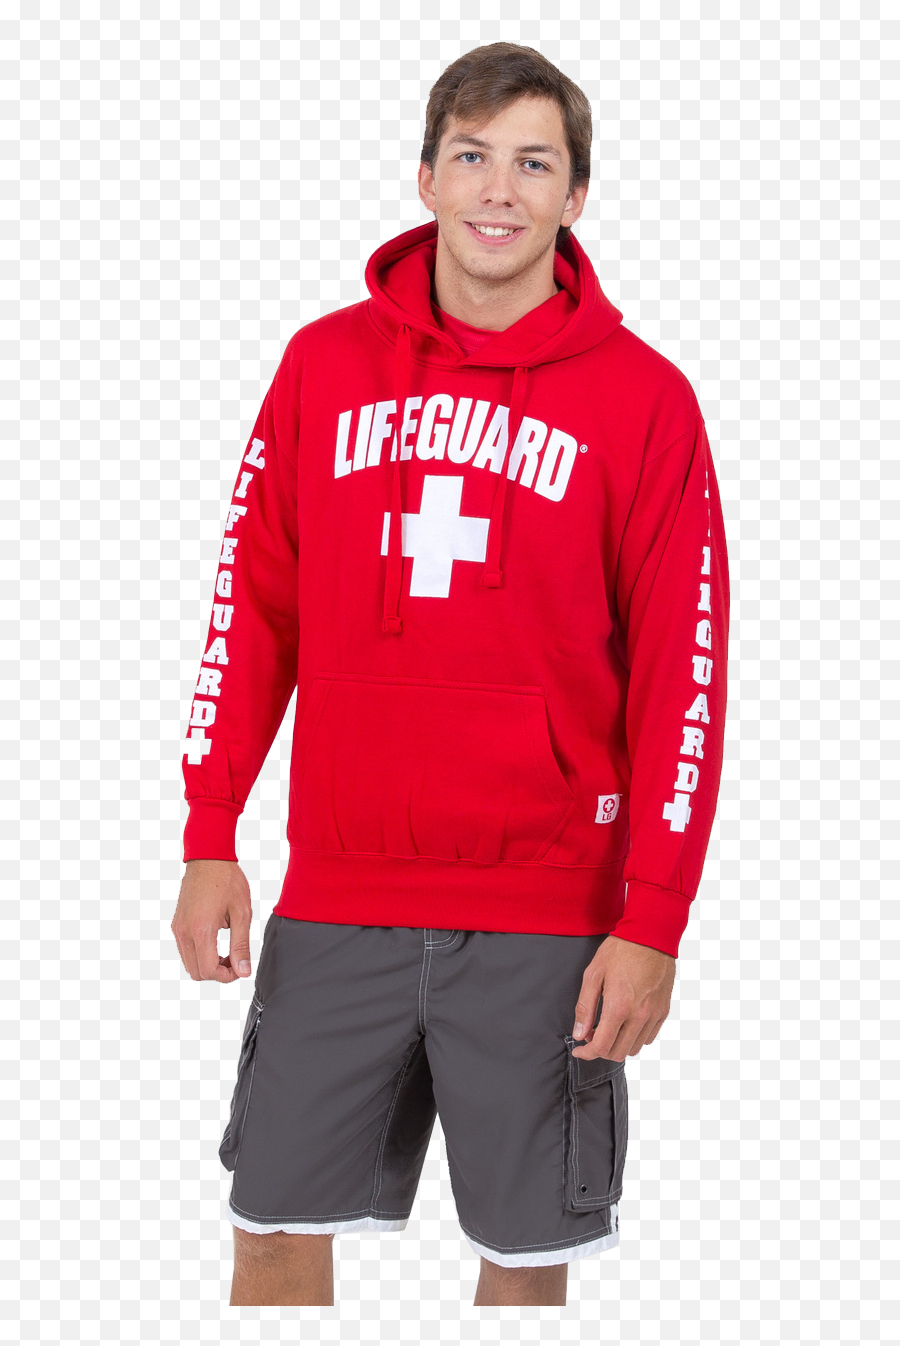 Bennington Lifeguards - Bermuda Shorts Png,Lifeguard Png